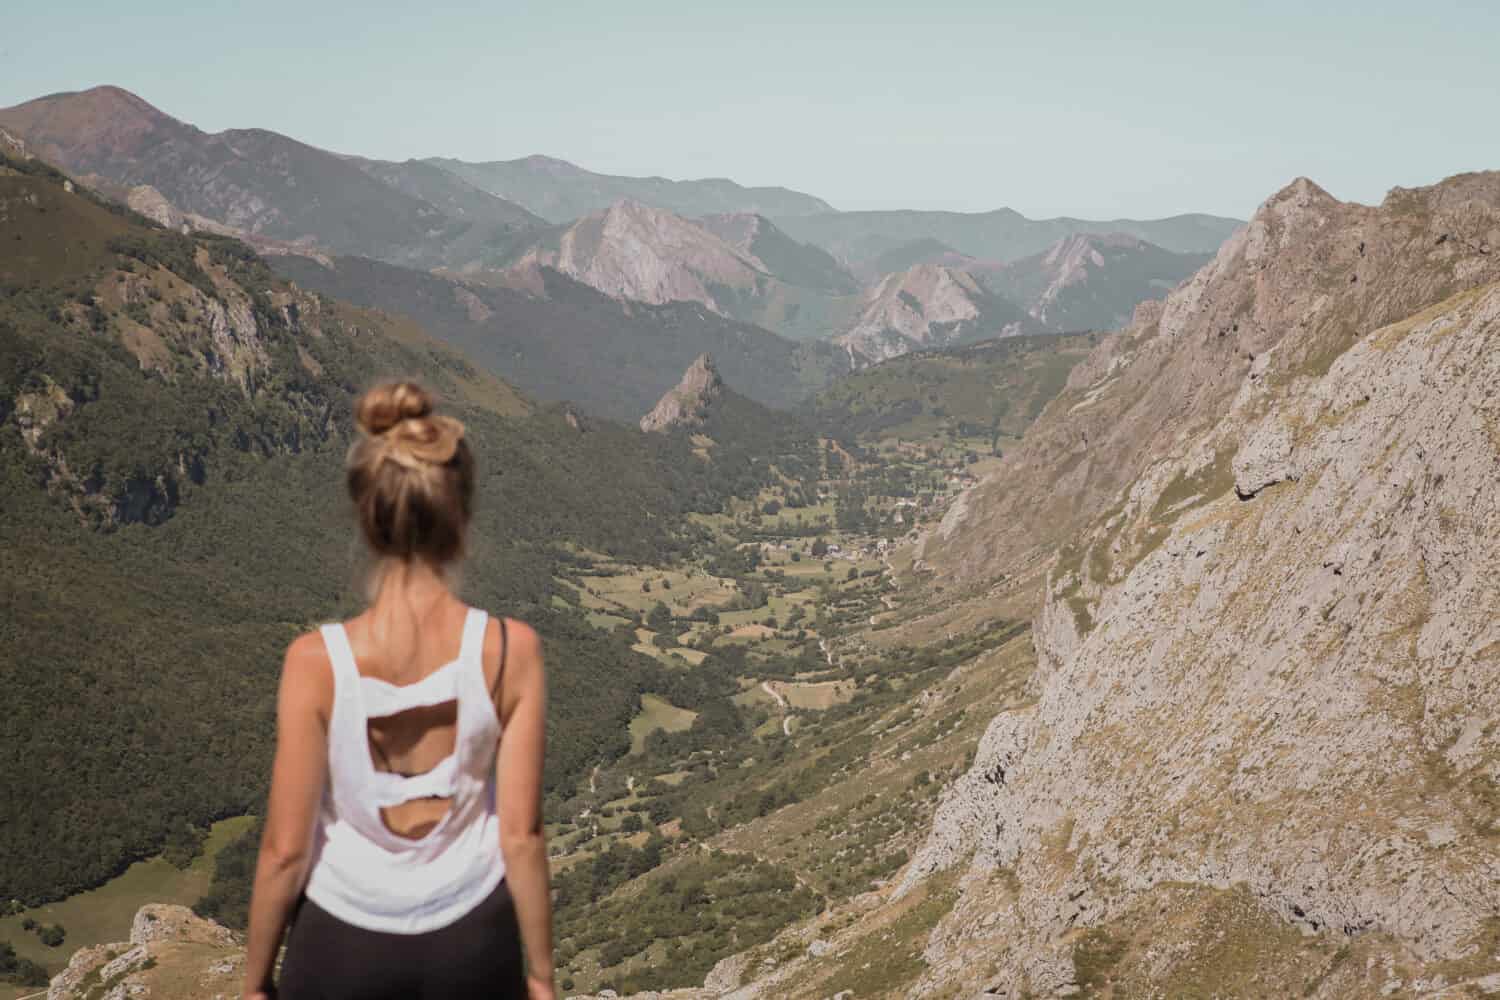 Giovane donna seduta sulla roccia guardando il bellissimo paesaggio del parco naturale di Somiedo nelle Asturie, Spagna, valle di montagna